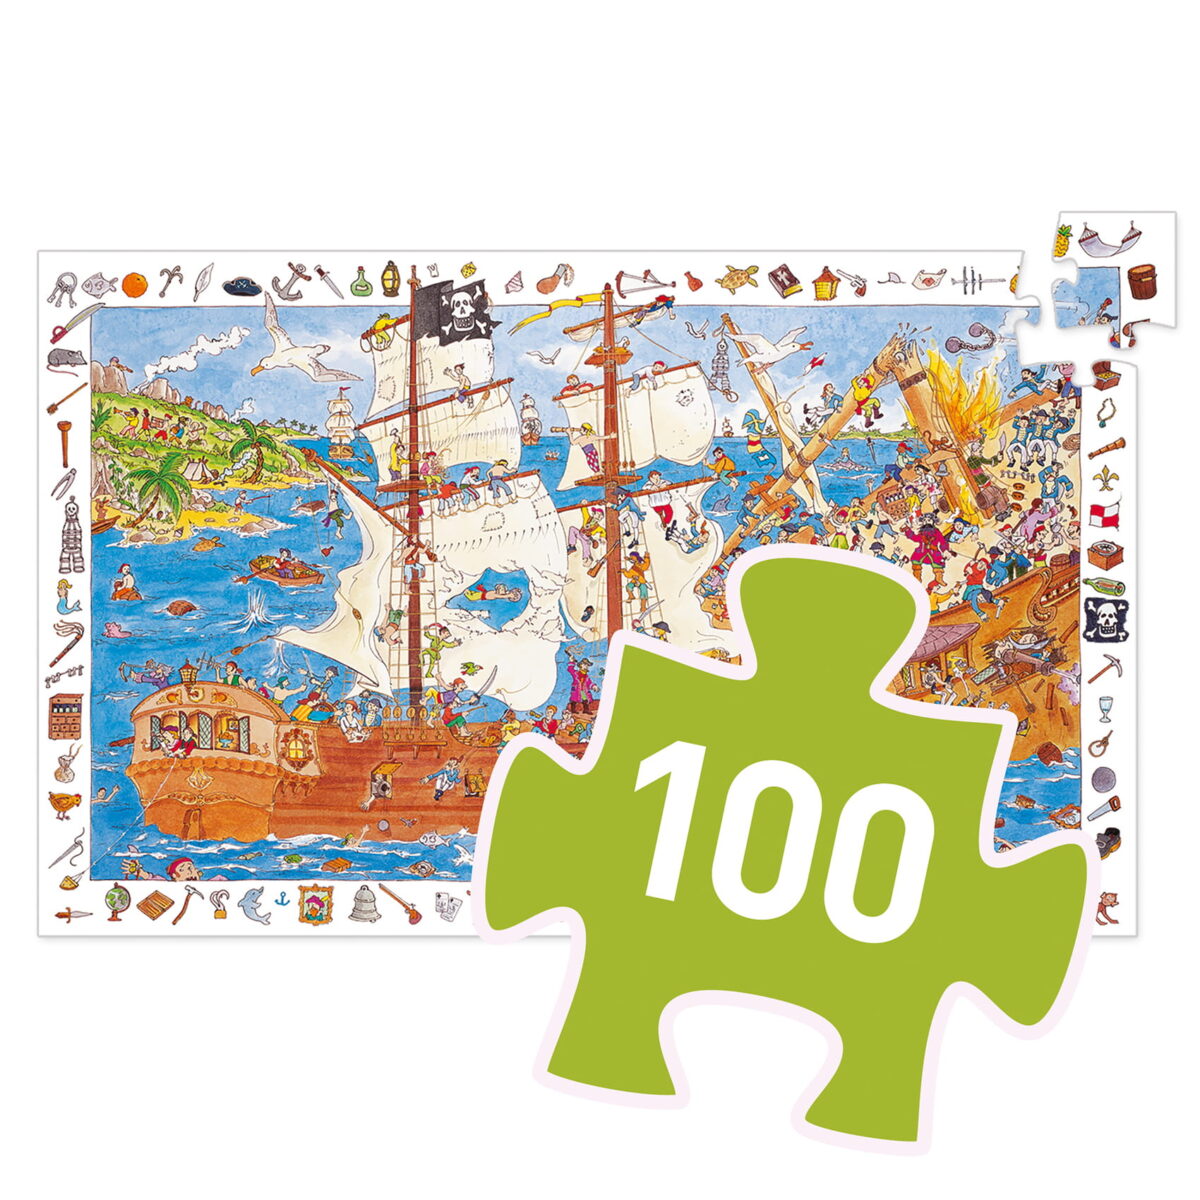 Djeco Puzzle Obserwacja  Piraci - 100 El.dj07506 Sklep Internetowy